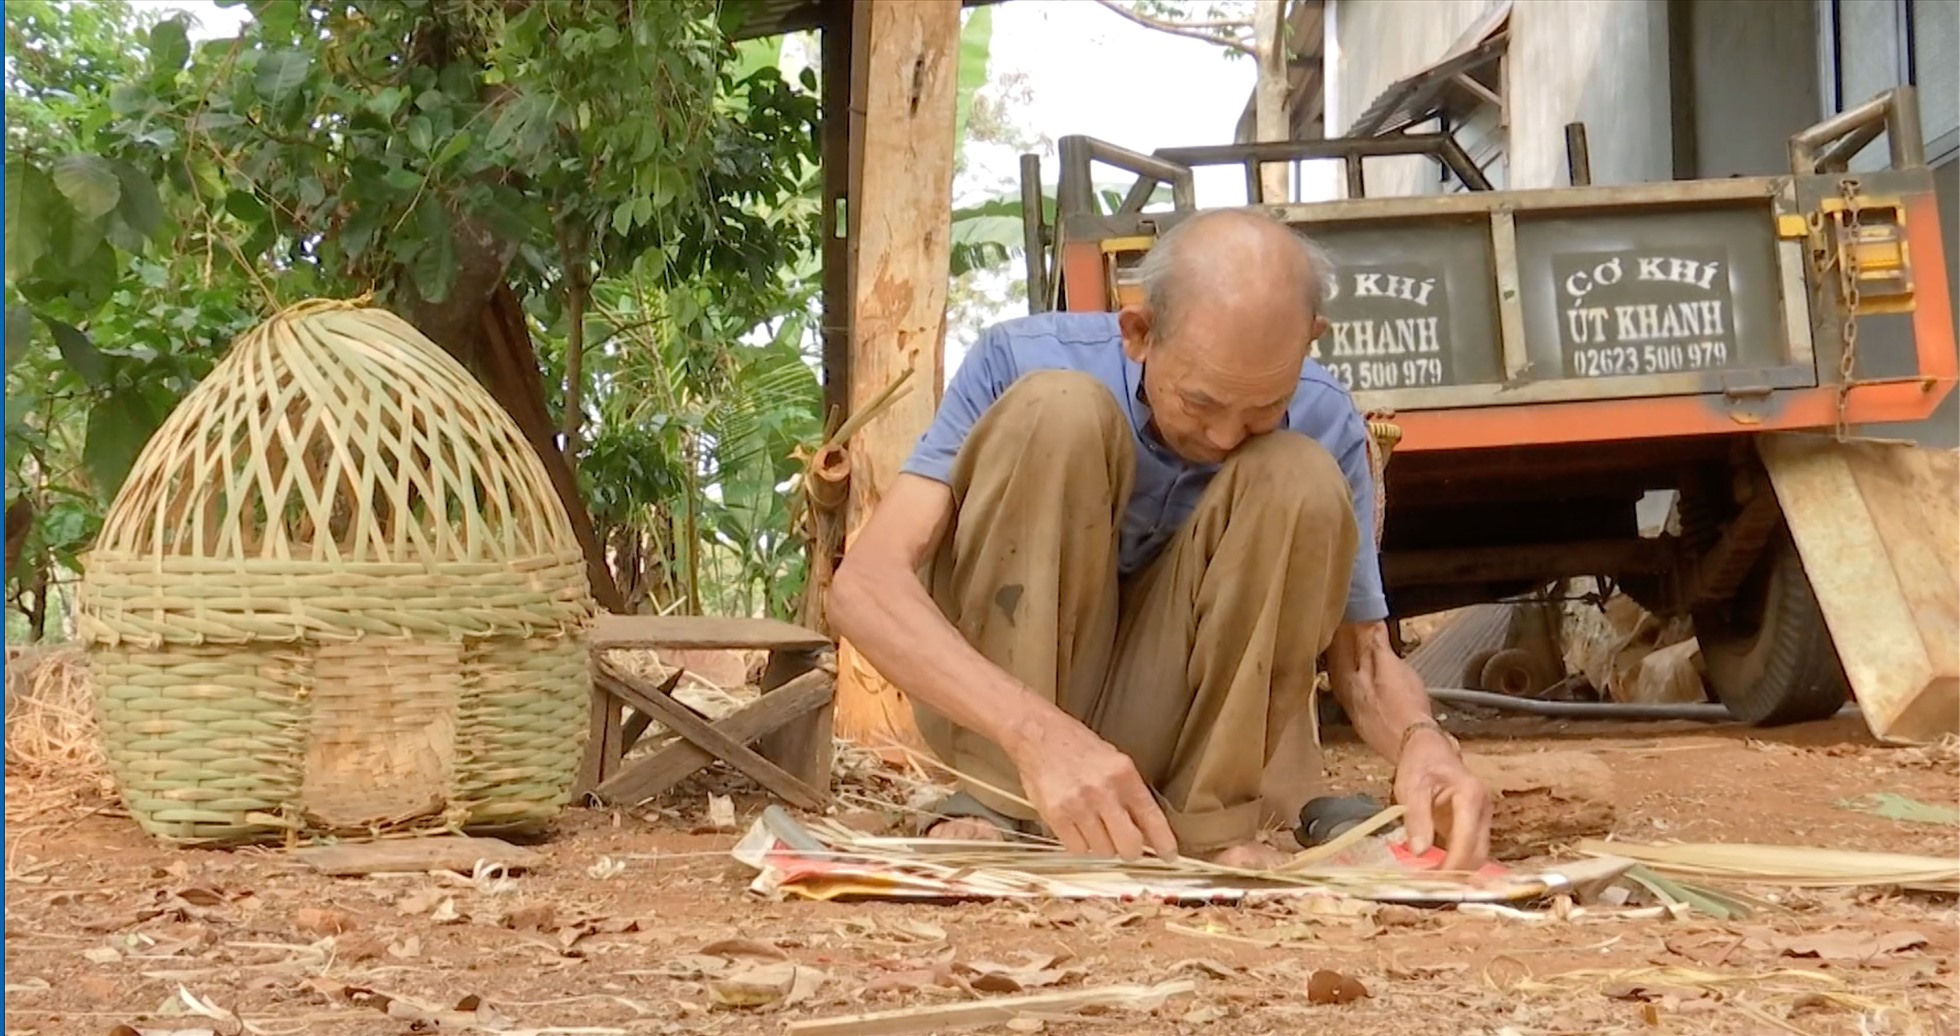 Ở Đắk Lắk hiện chỉ còn rất ít người biết làm nghề đan lát. Ảnh: Bảo Trung